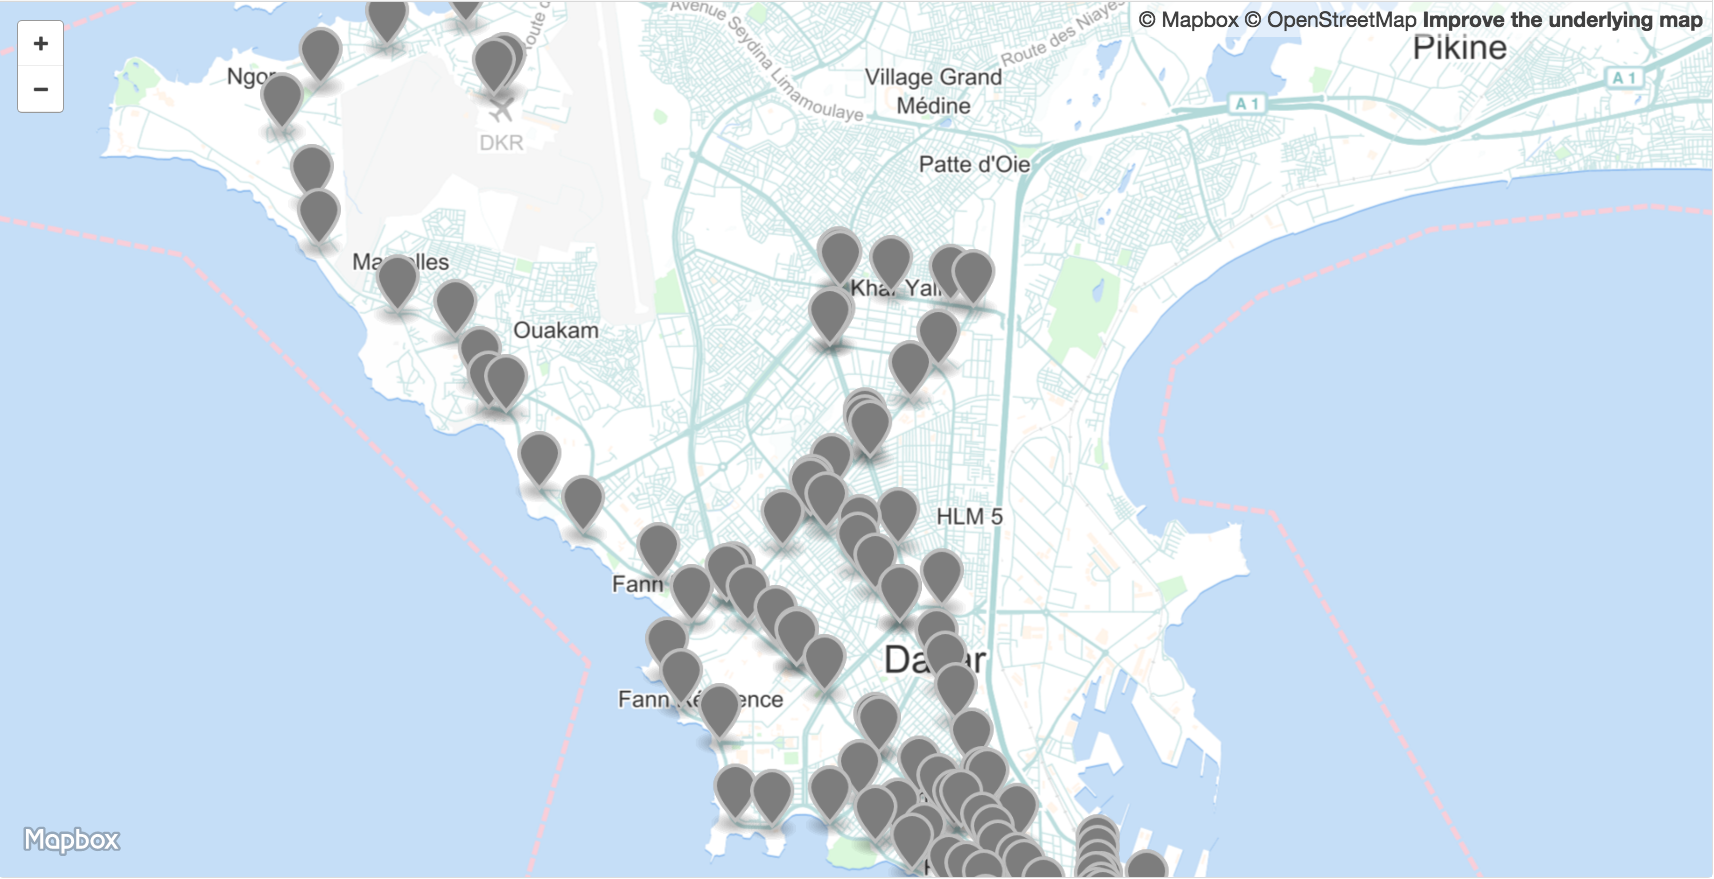 Comment améliorer la mobilité à Dakar avec les données ouvertes ?